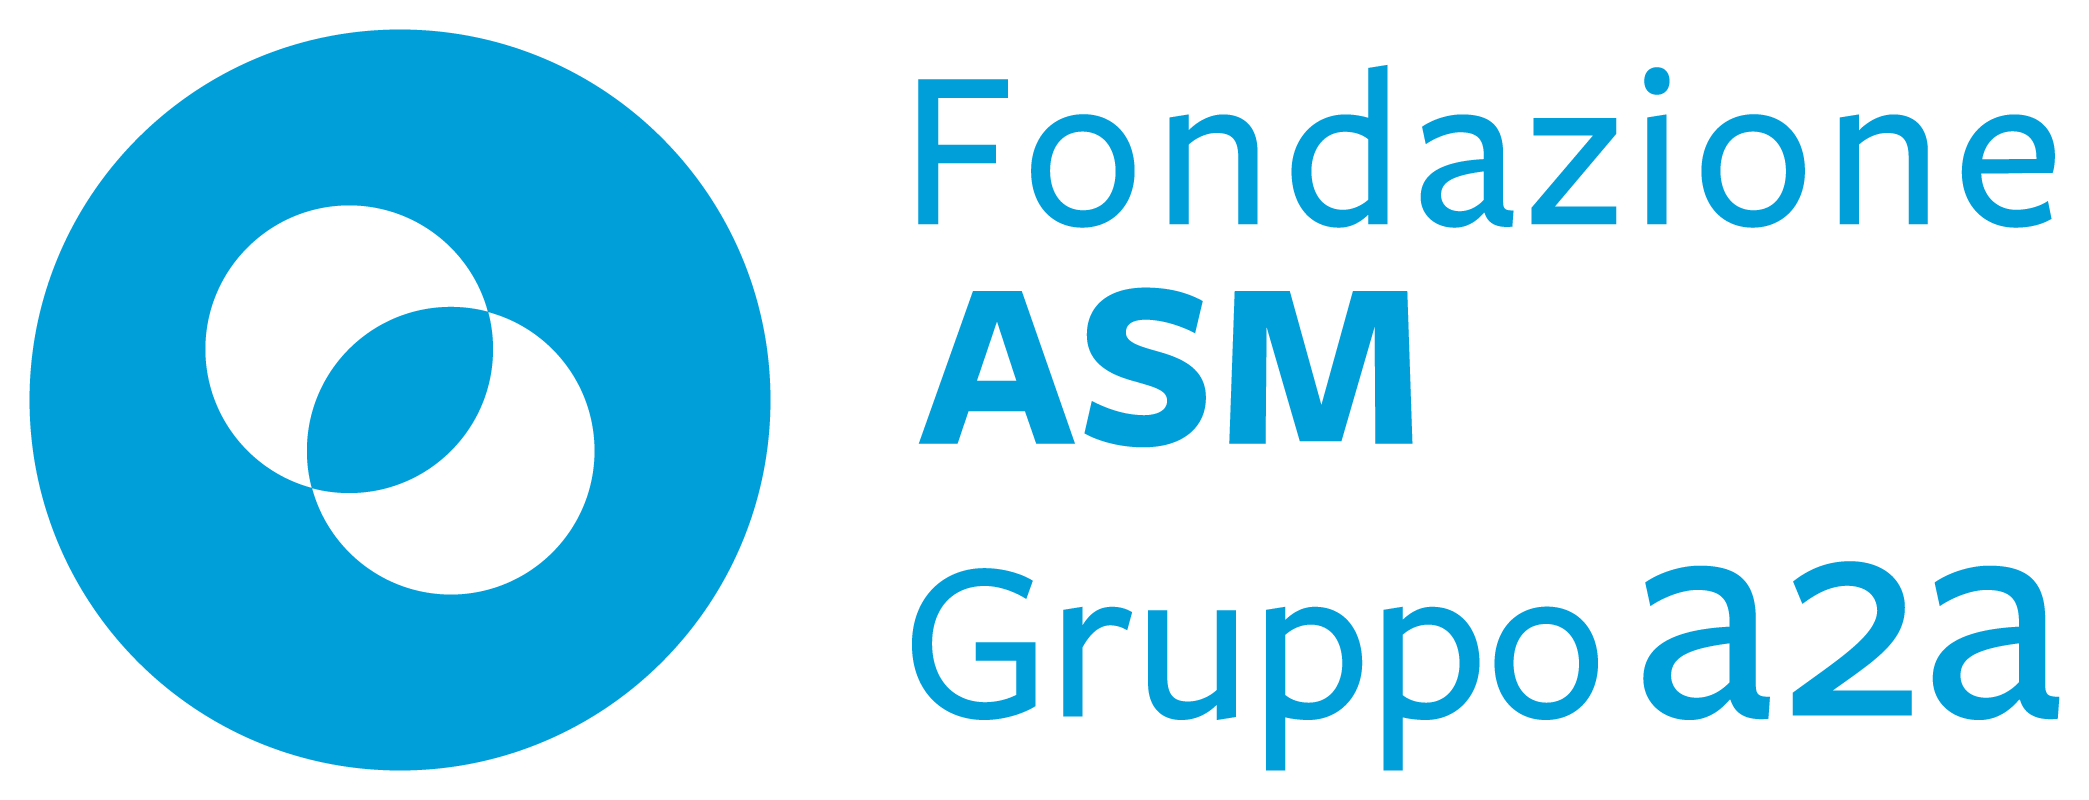 logo Fondazione ASM